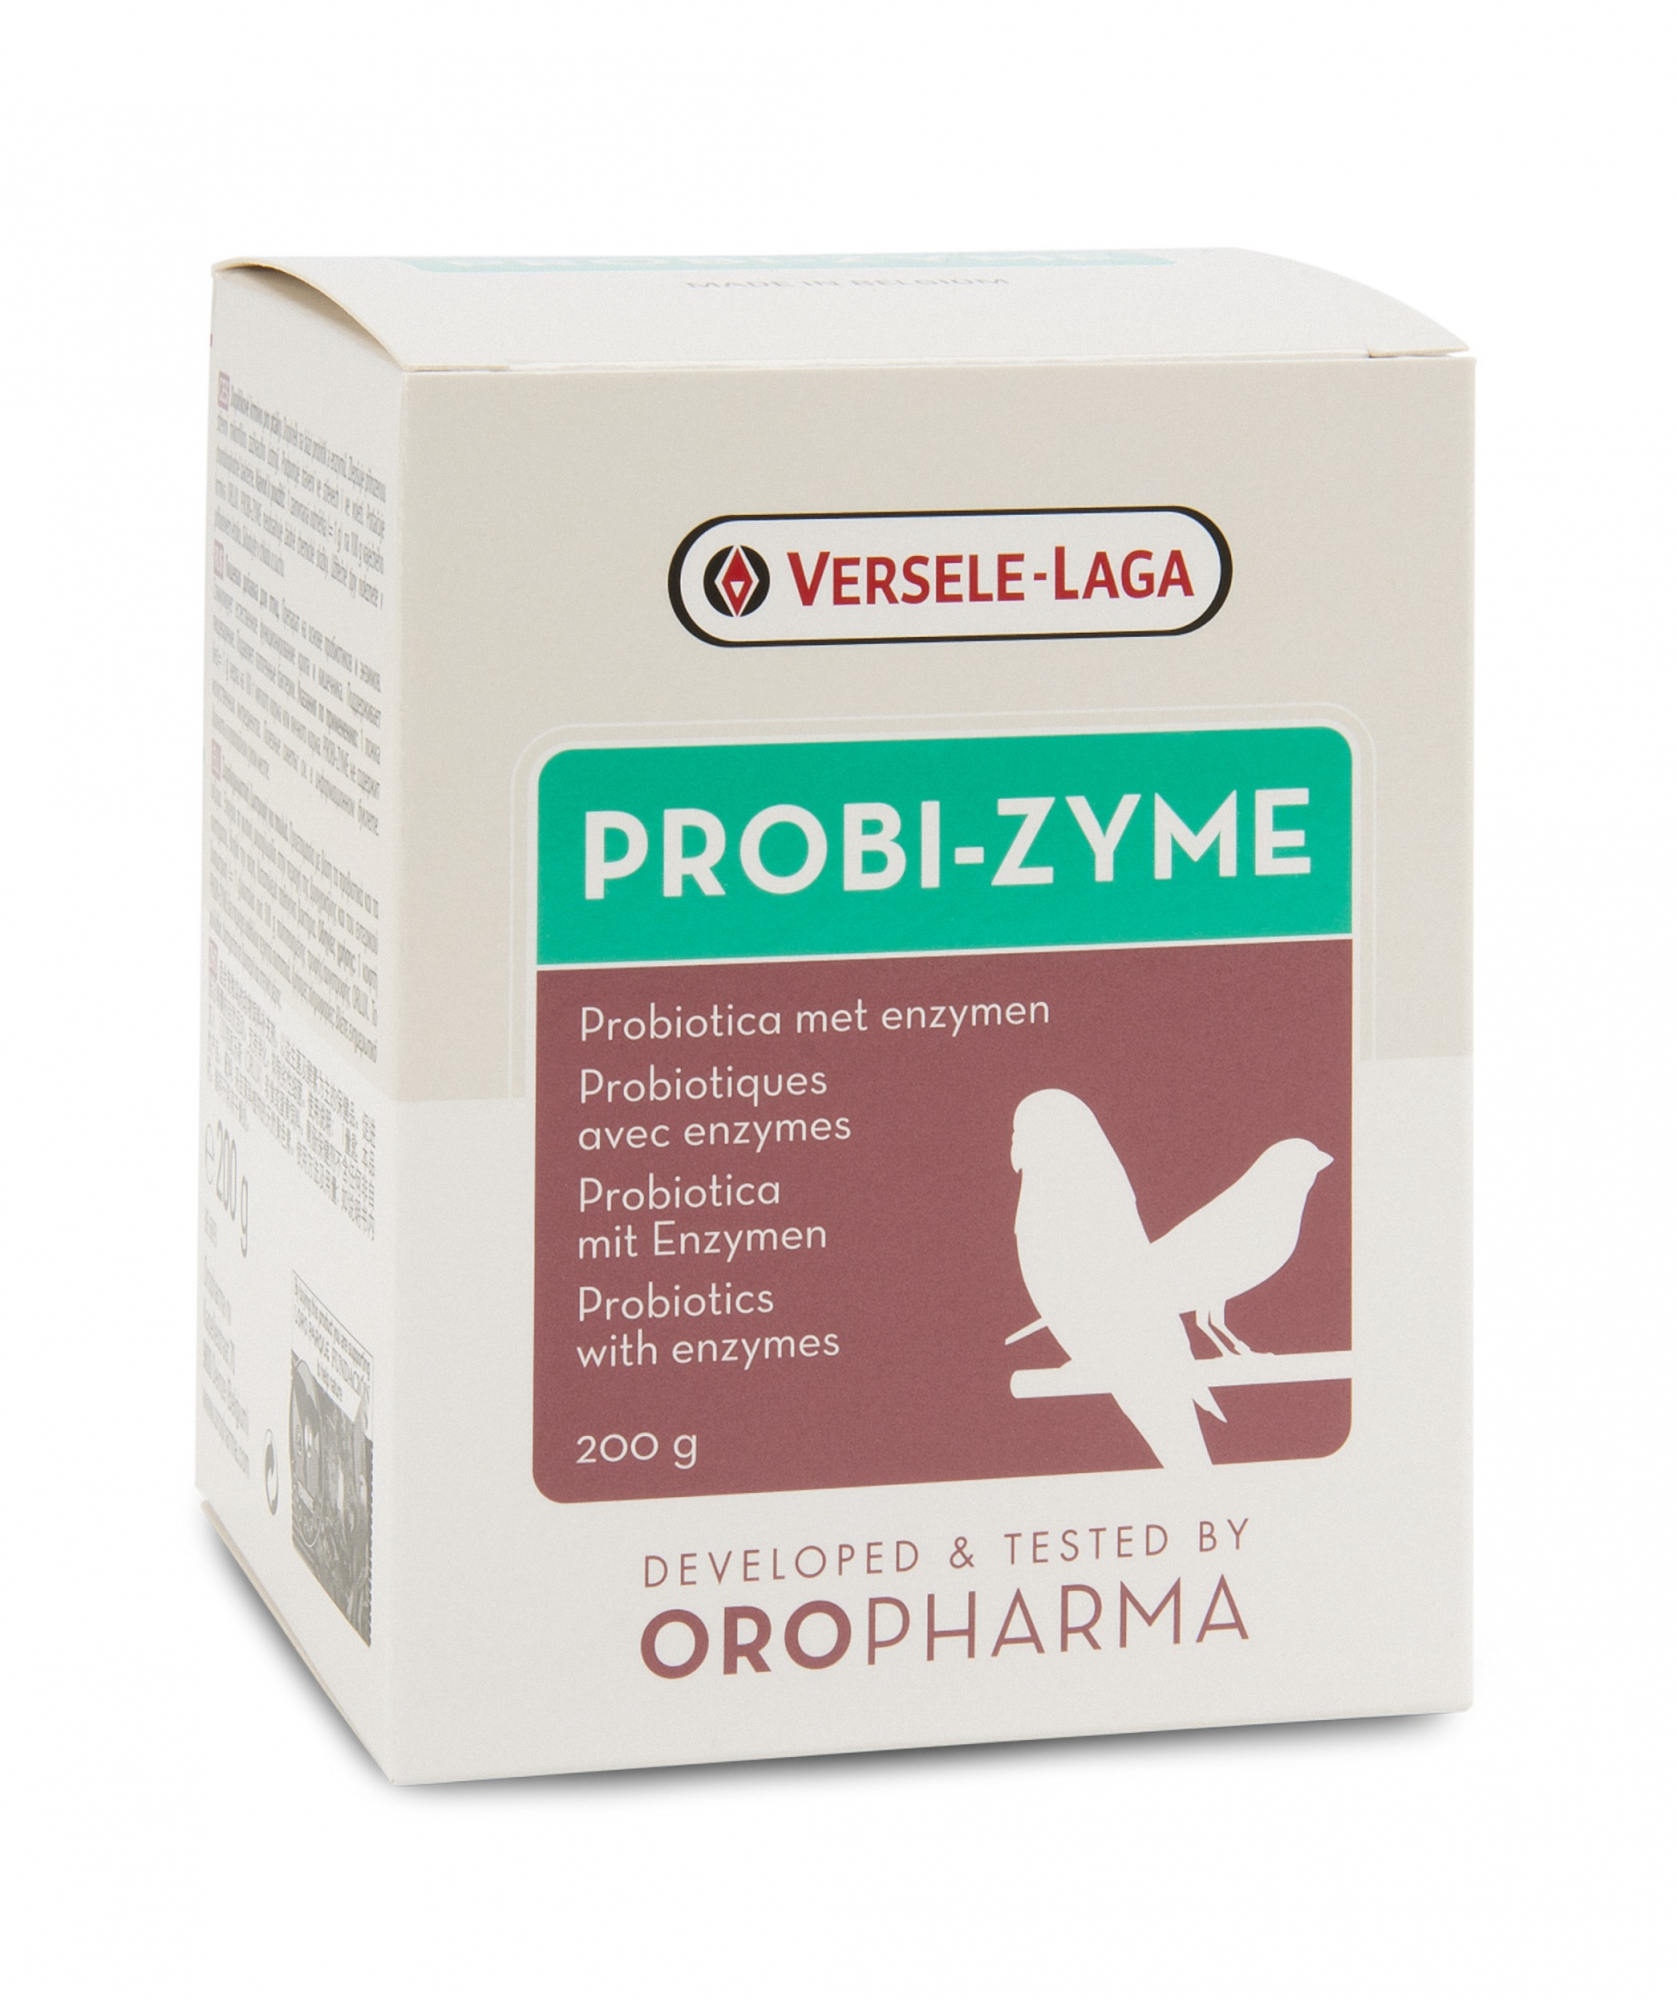 Oropharma Probi-Zyme - Ergänzungsfuttermittel eine Kombination aus Probiotika und Verdauungsenzymen